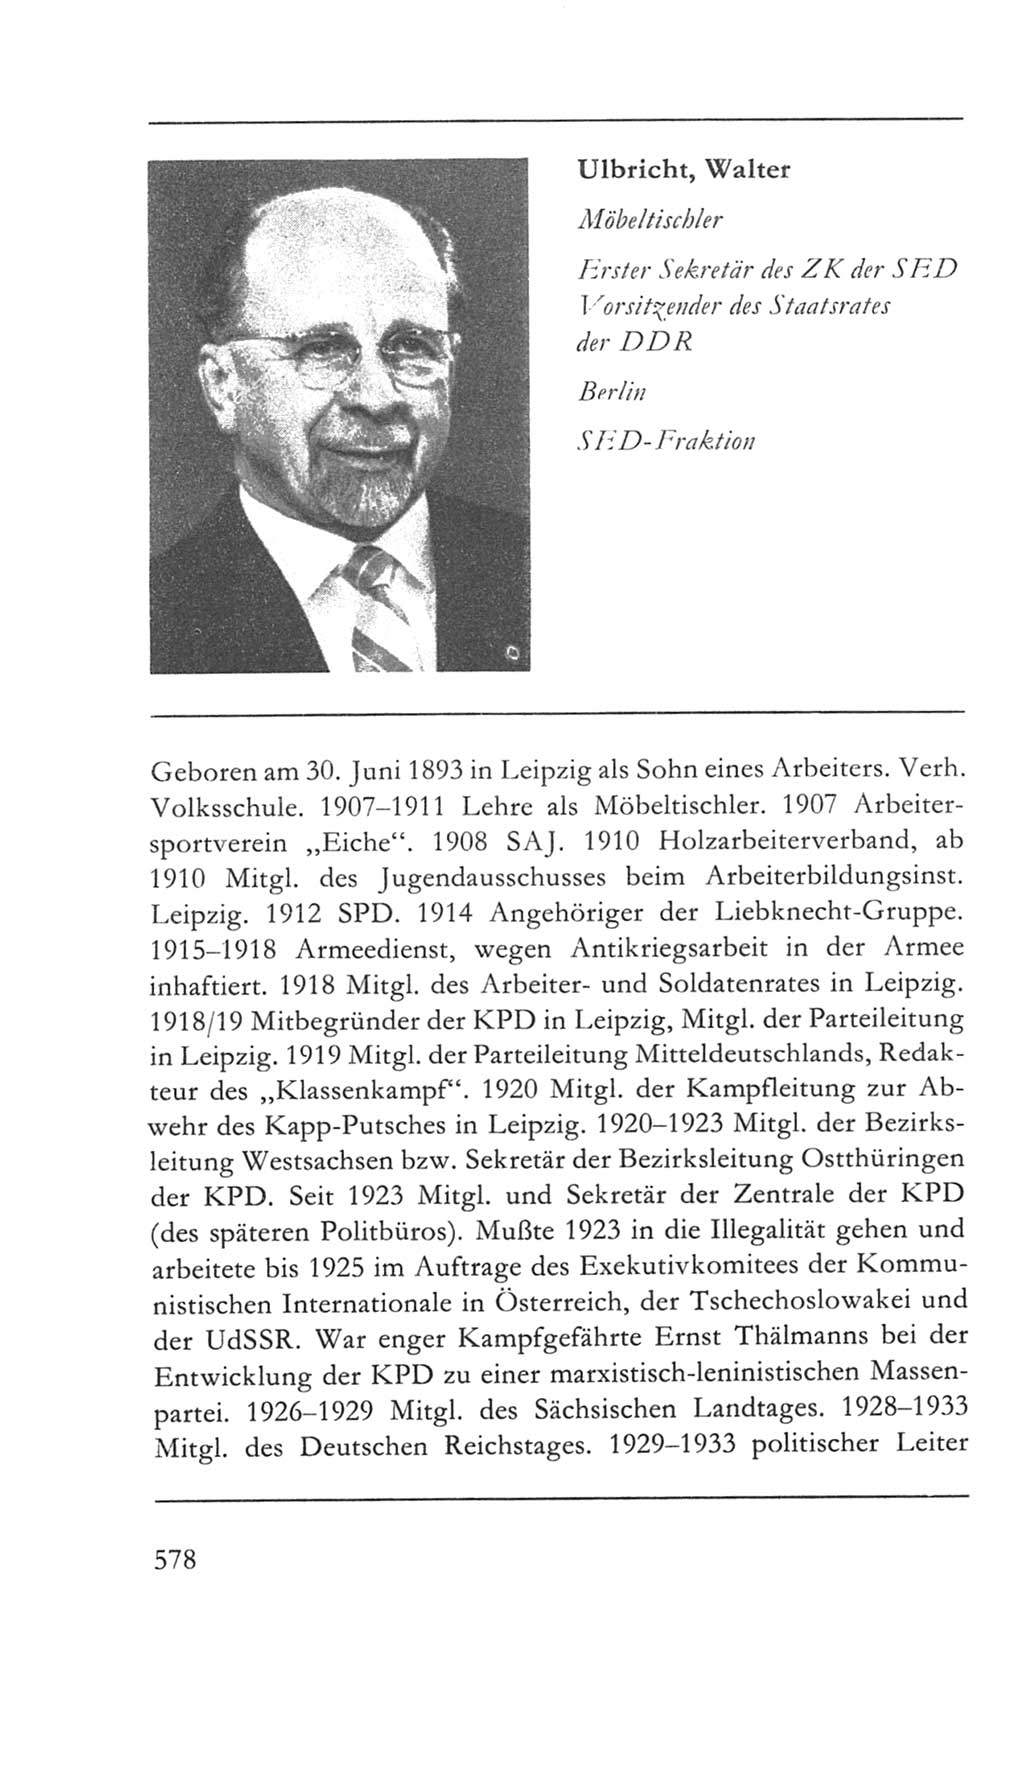 Volkskammer (VK) der Deutschen Demokratischen Republik (DDR) 5. Wahlperiode 1967-1971, Seite 578 (VK. DDR 5. WP. 1967-1971, S. 578)